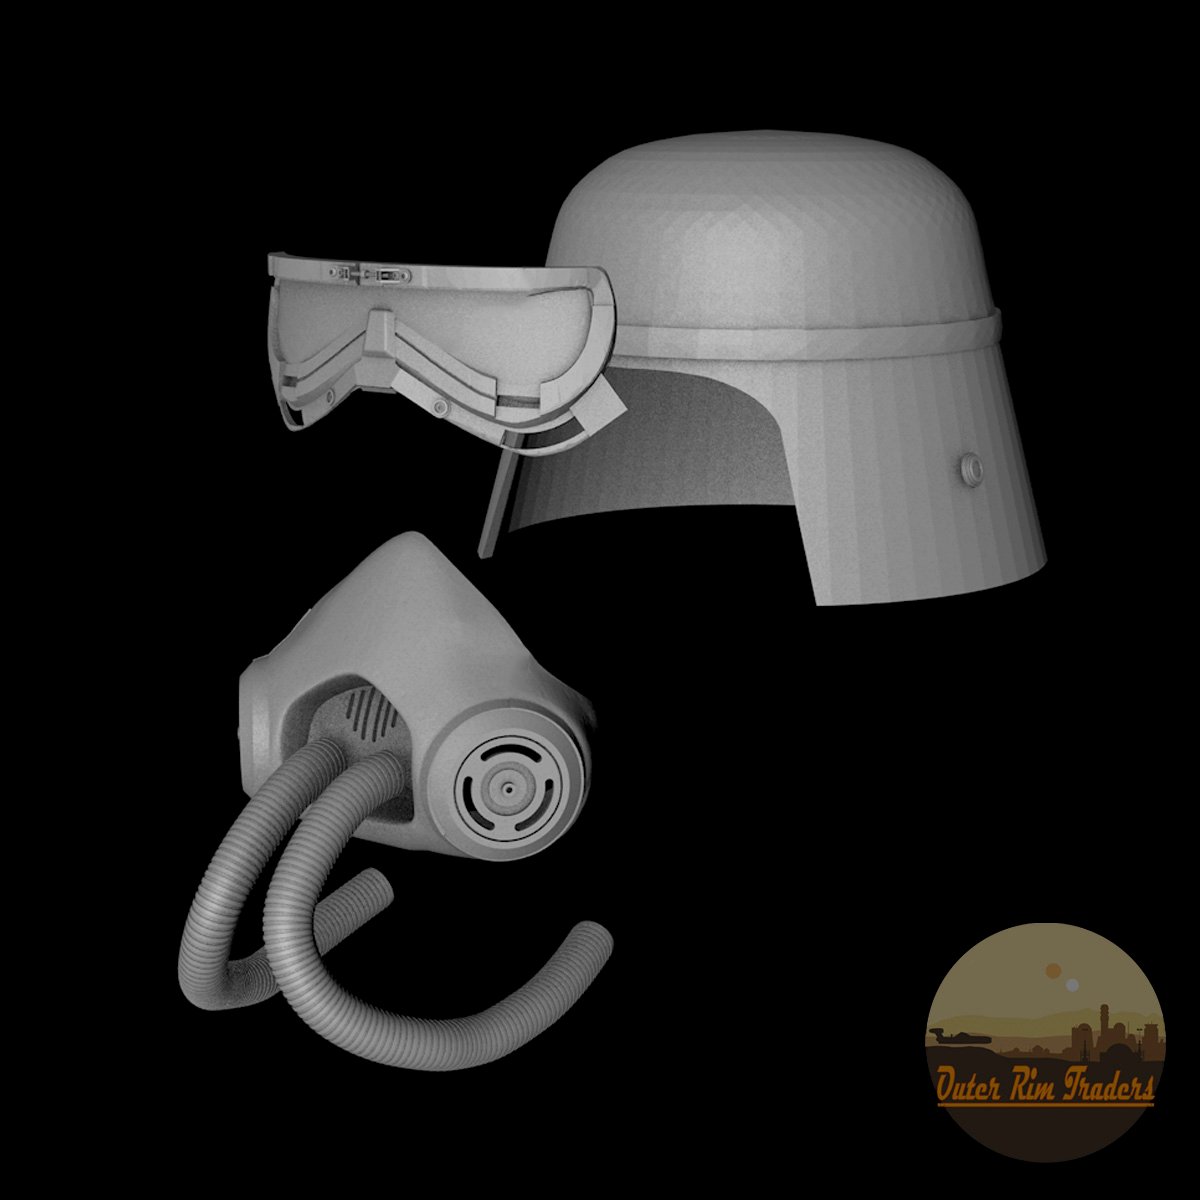 Image of Mud Helmet Kit modeled by Corey Macourek